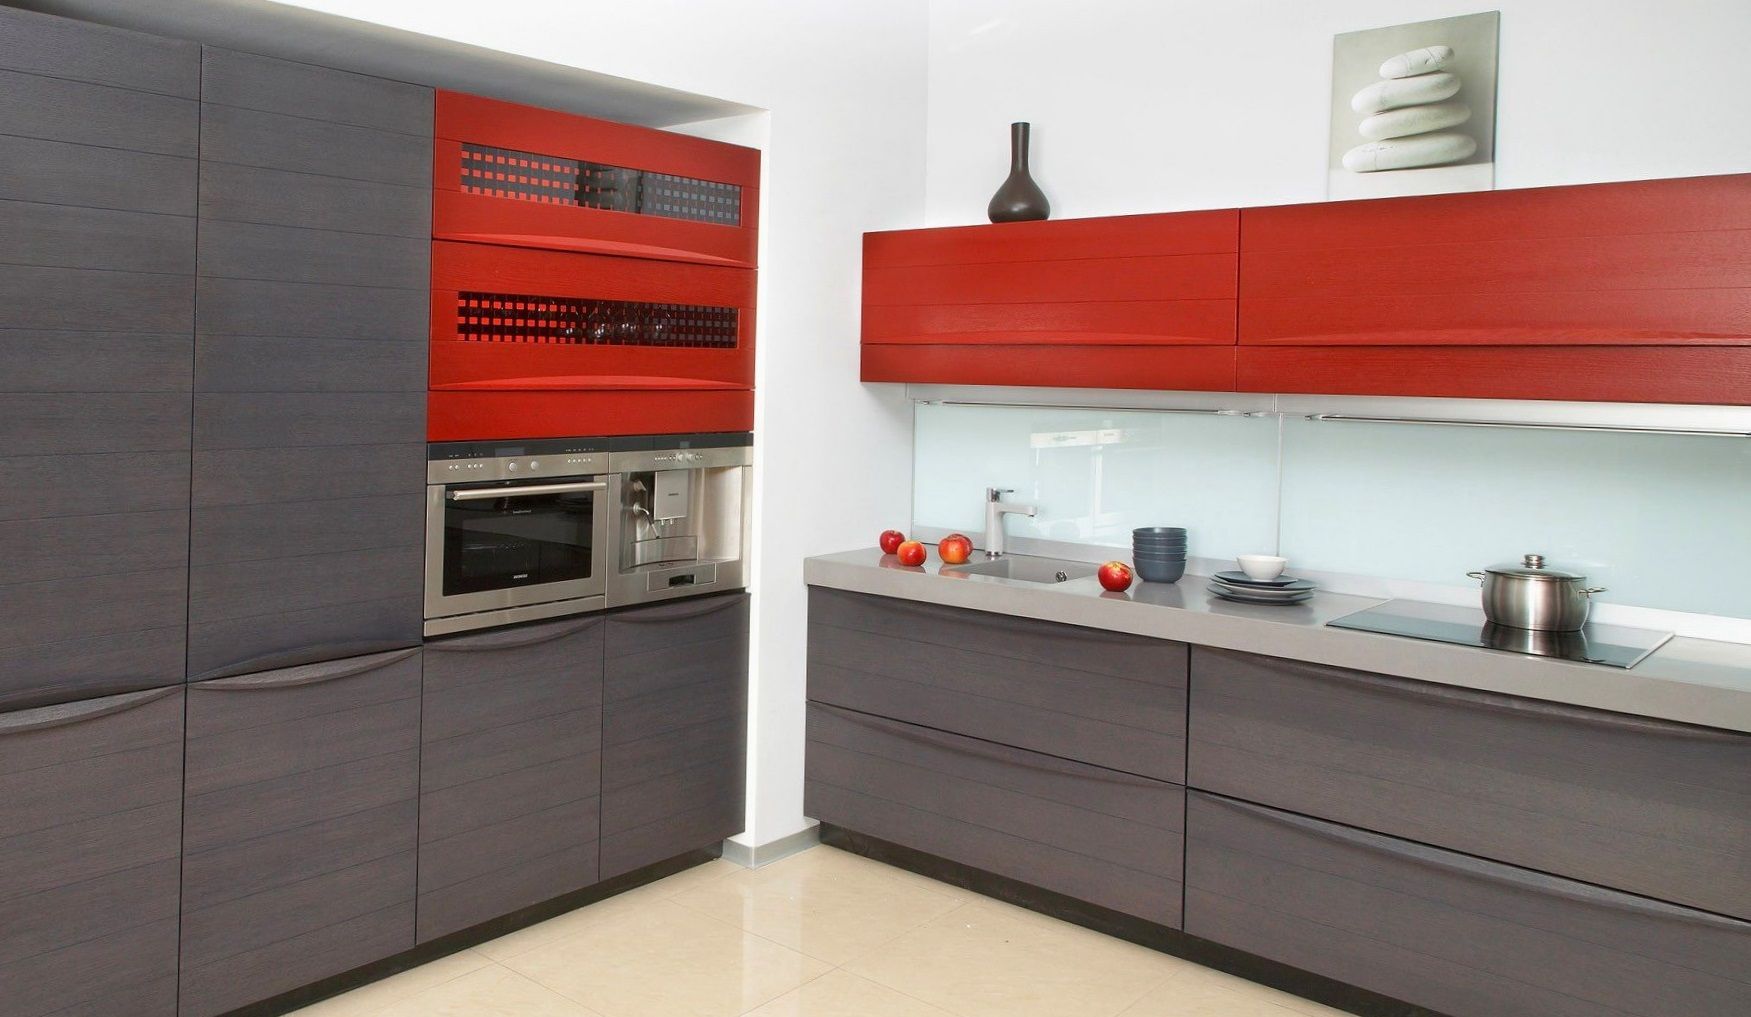 Кухня Роксана в стиле модерн серого цвета с красными верхним ярусом и встроенной техникой